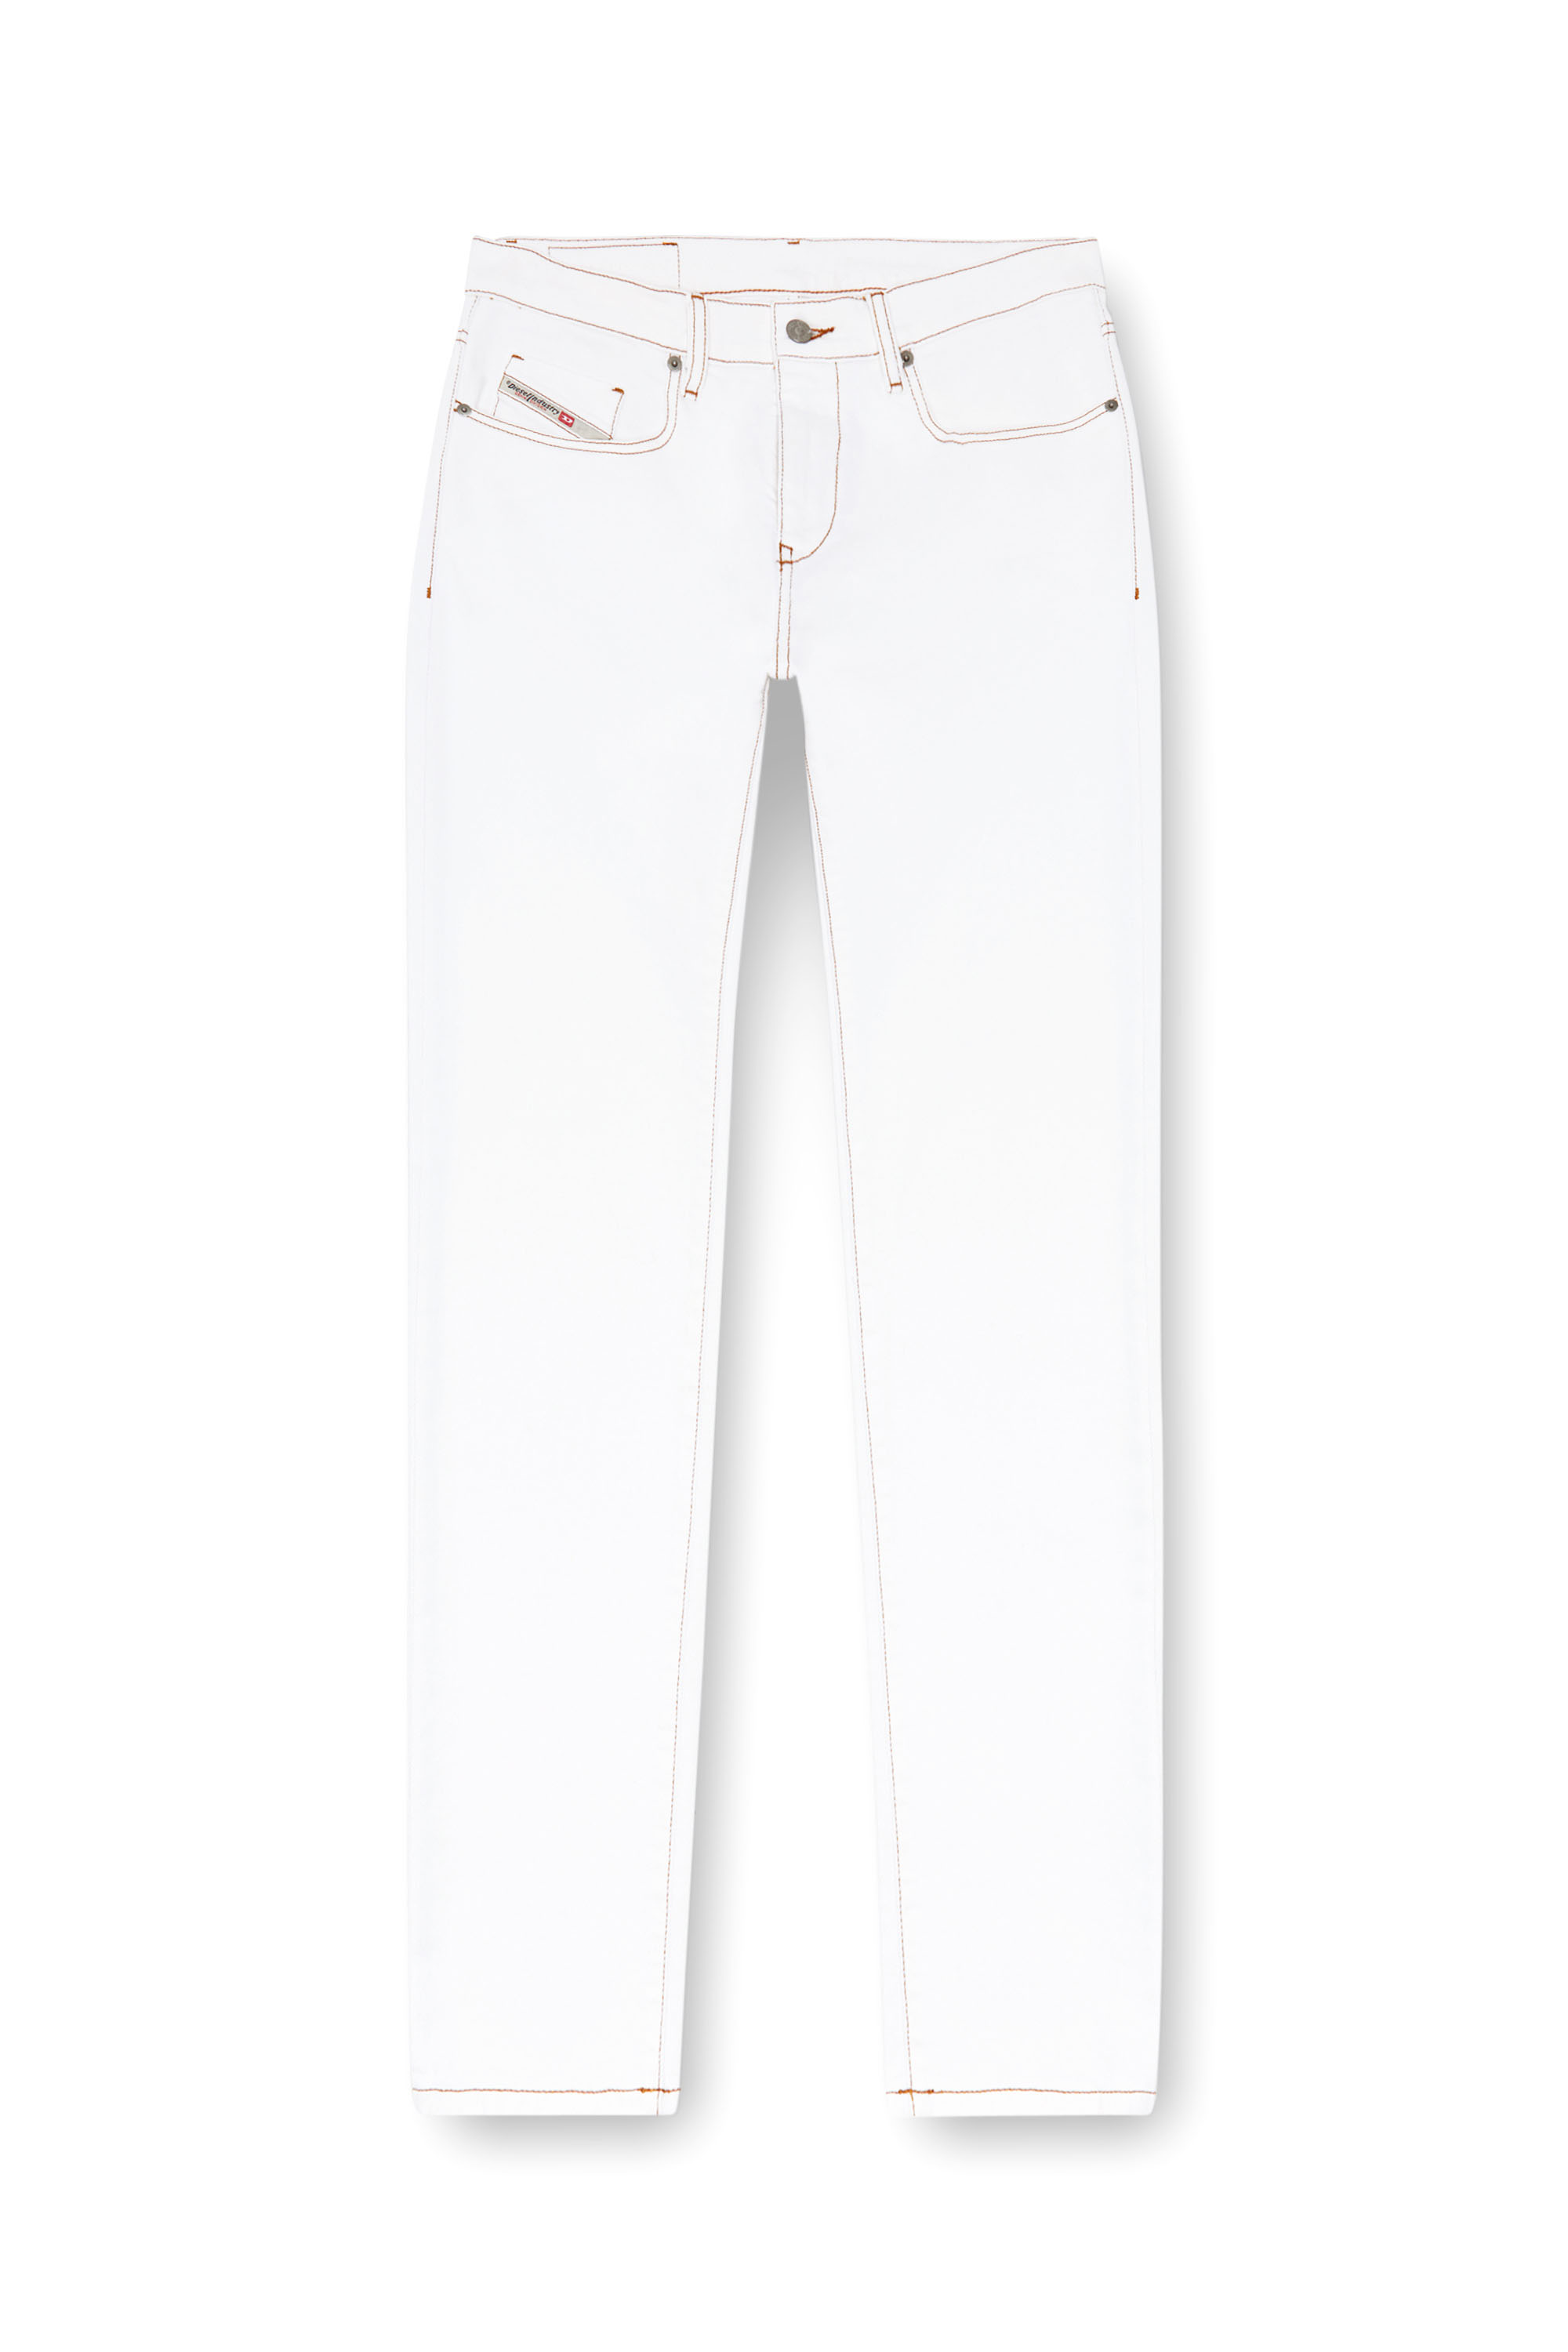 Diesel - Slim Jeans 2019 D-Strukt 09K05, Hombre Slim Jeans - 2019 D-Strukt in Blanco - Image 5